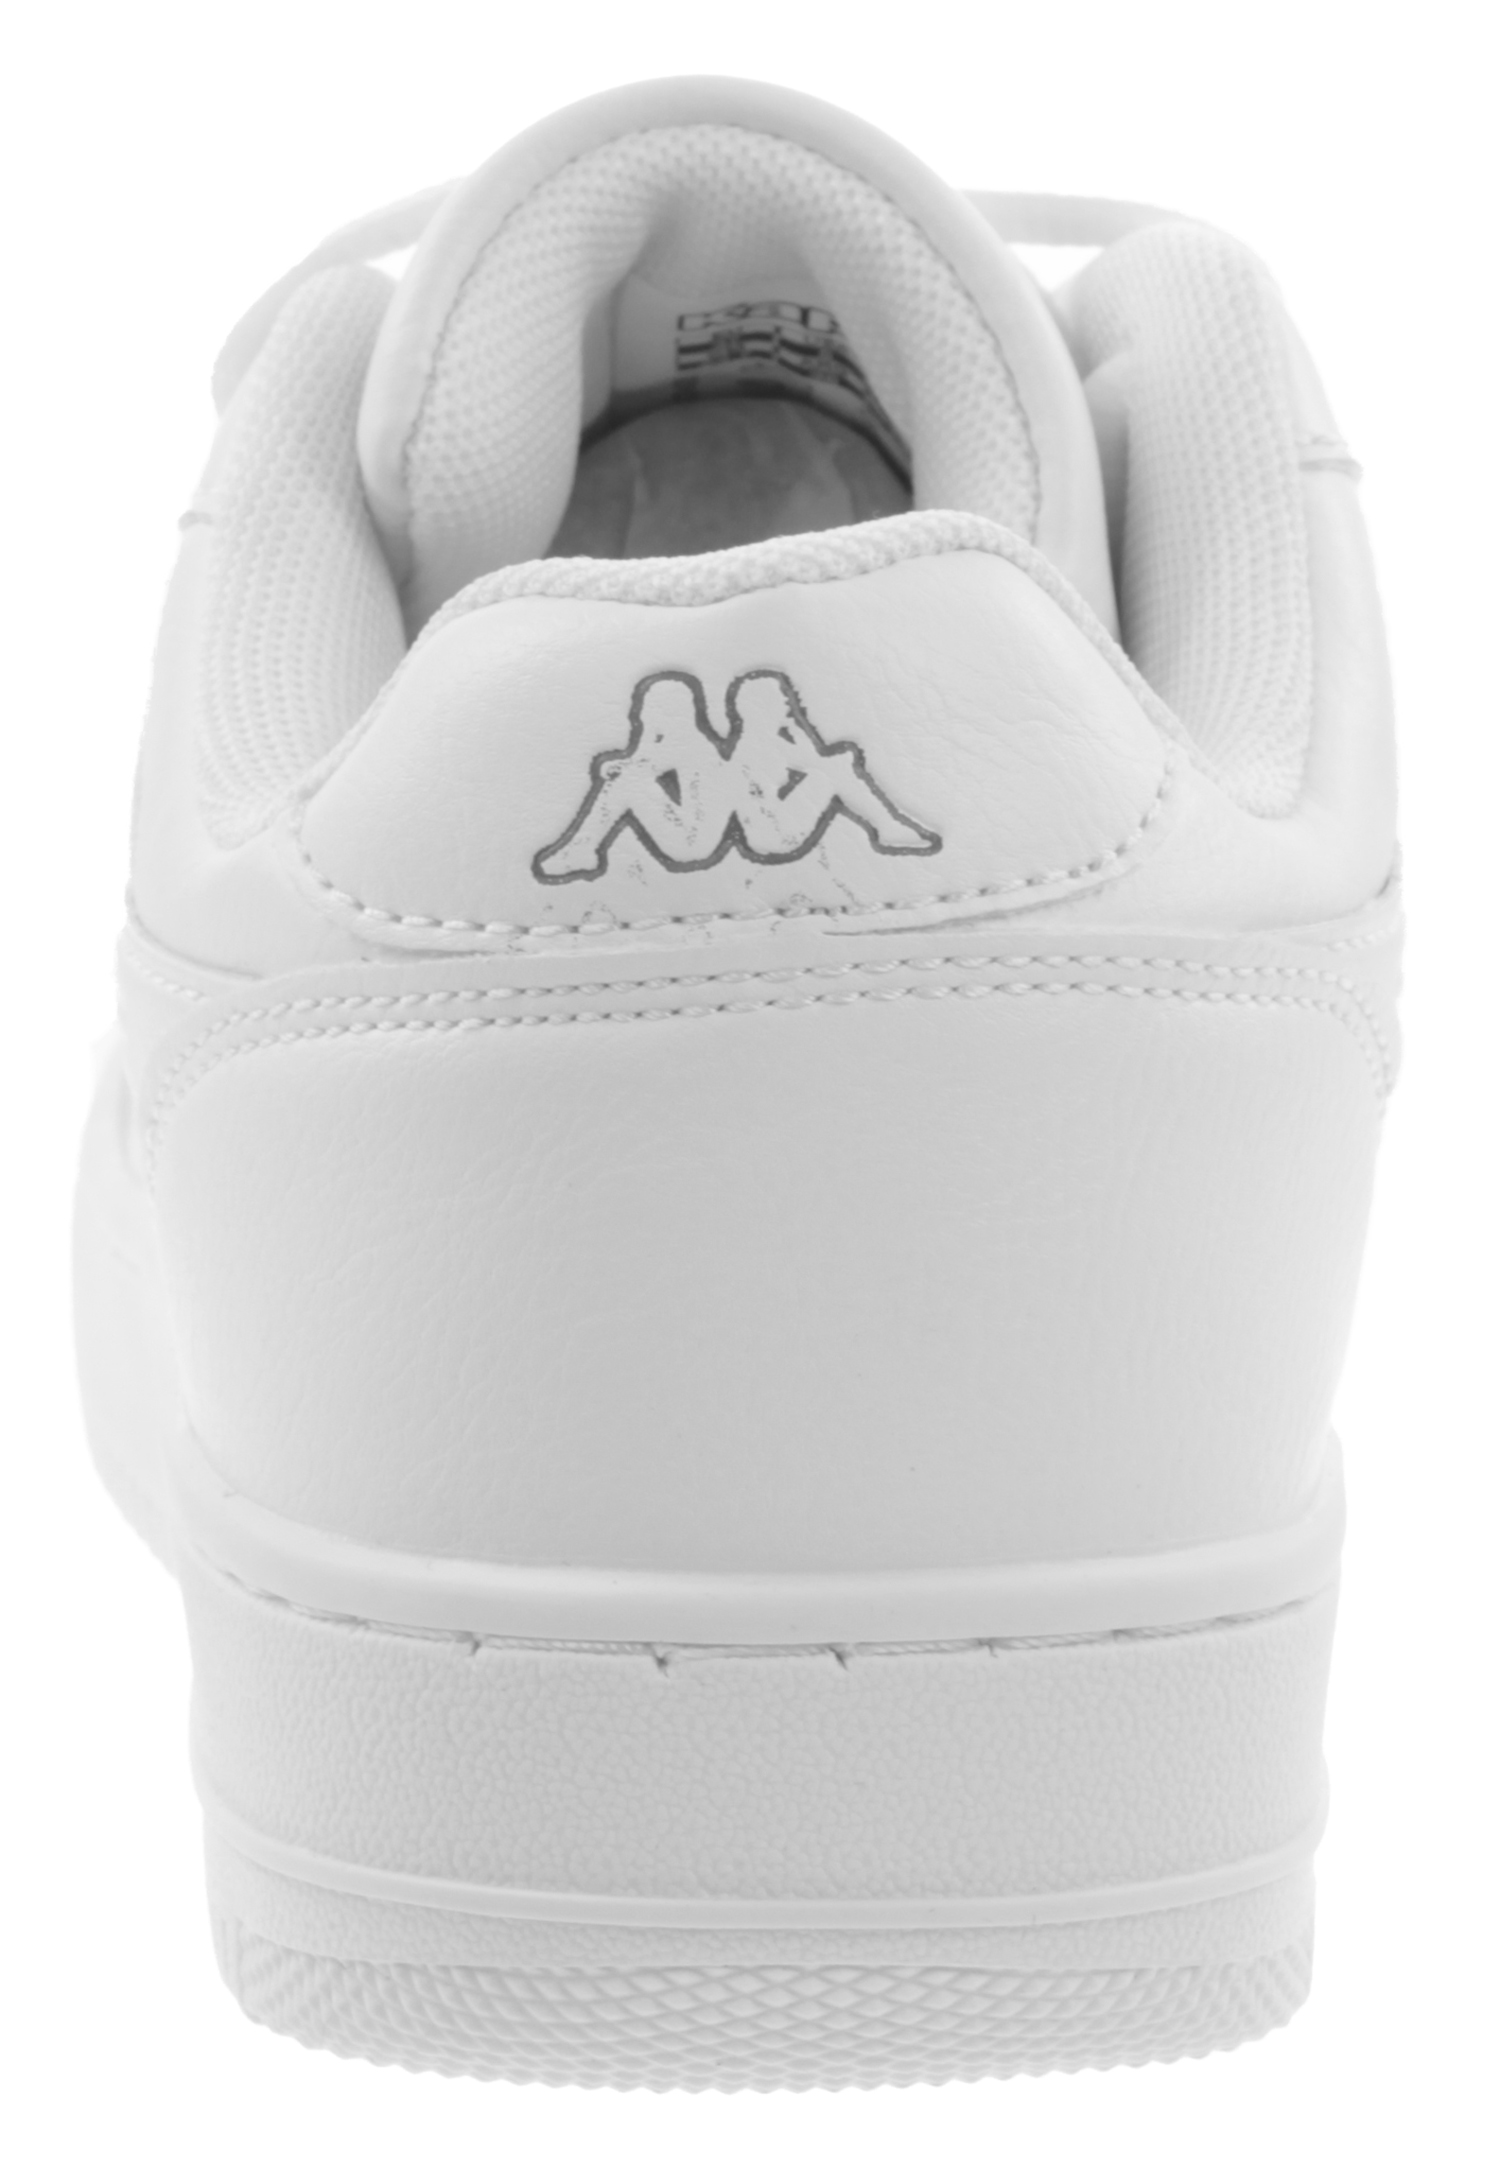 Kappa Unisex Sneaker STYLECODE: 242533 Weiß